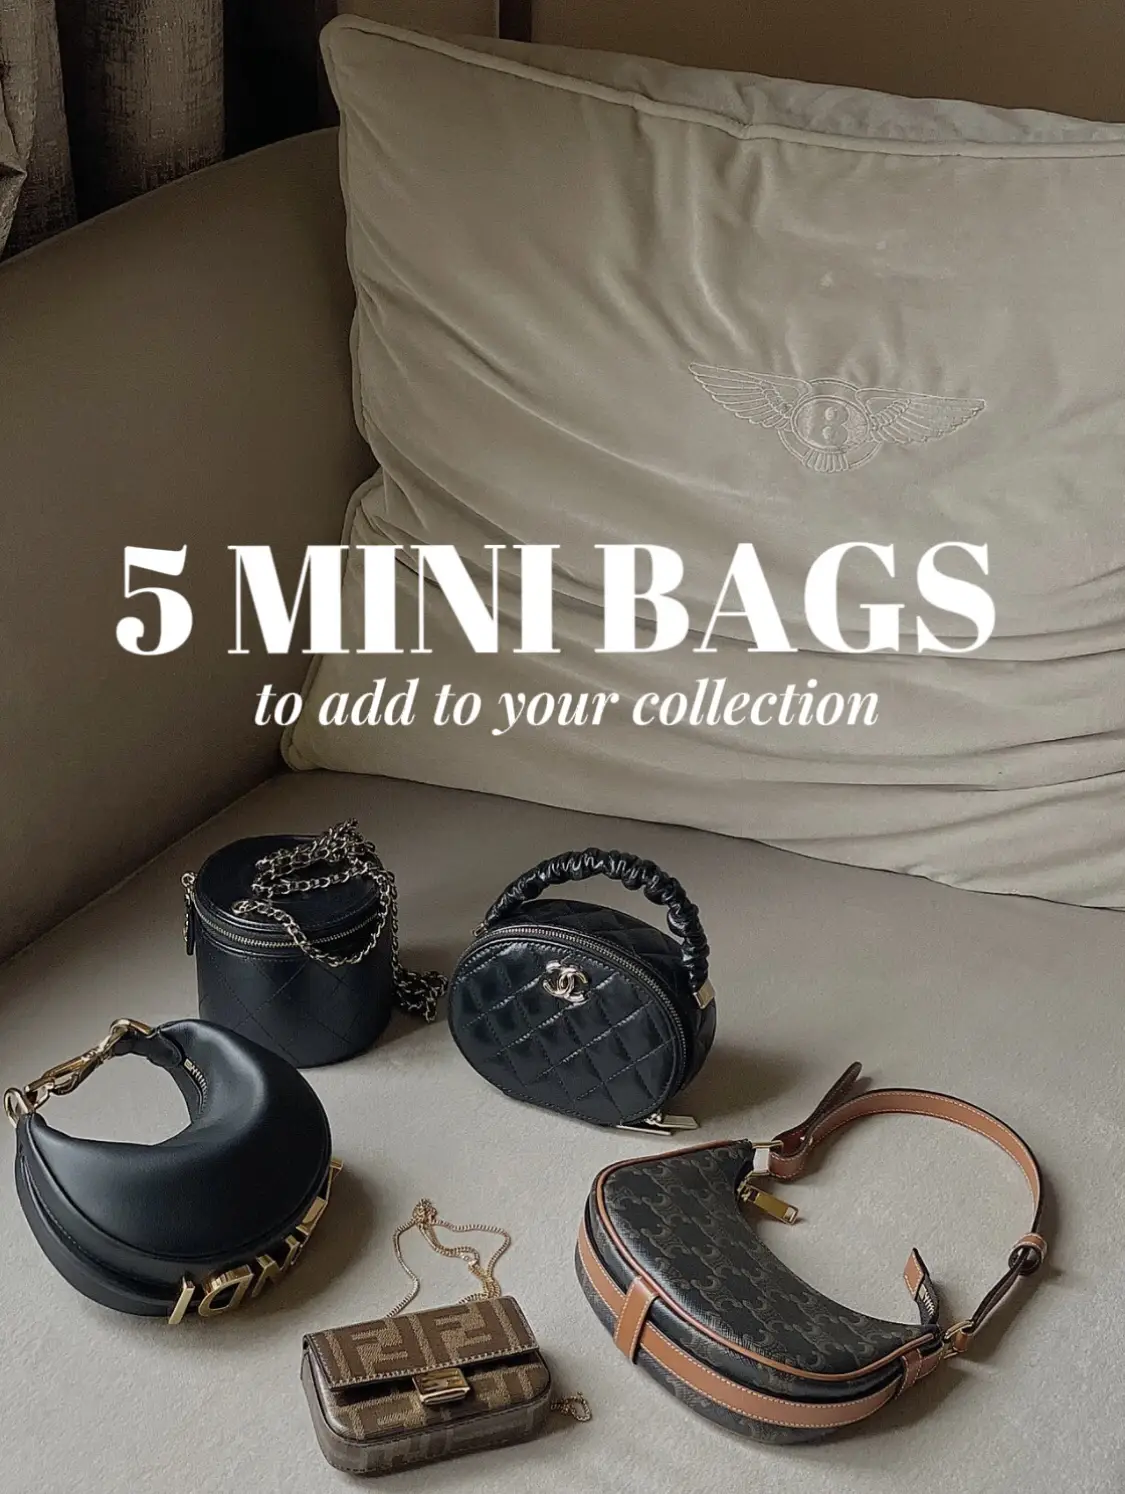 Mini Chanel Handbags – Tiny Must Haves